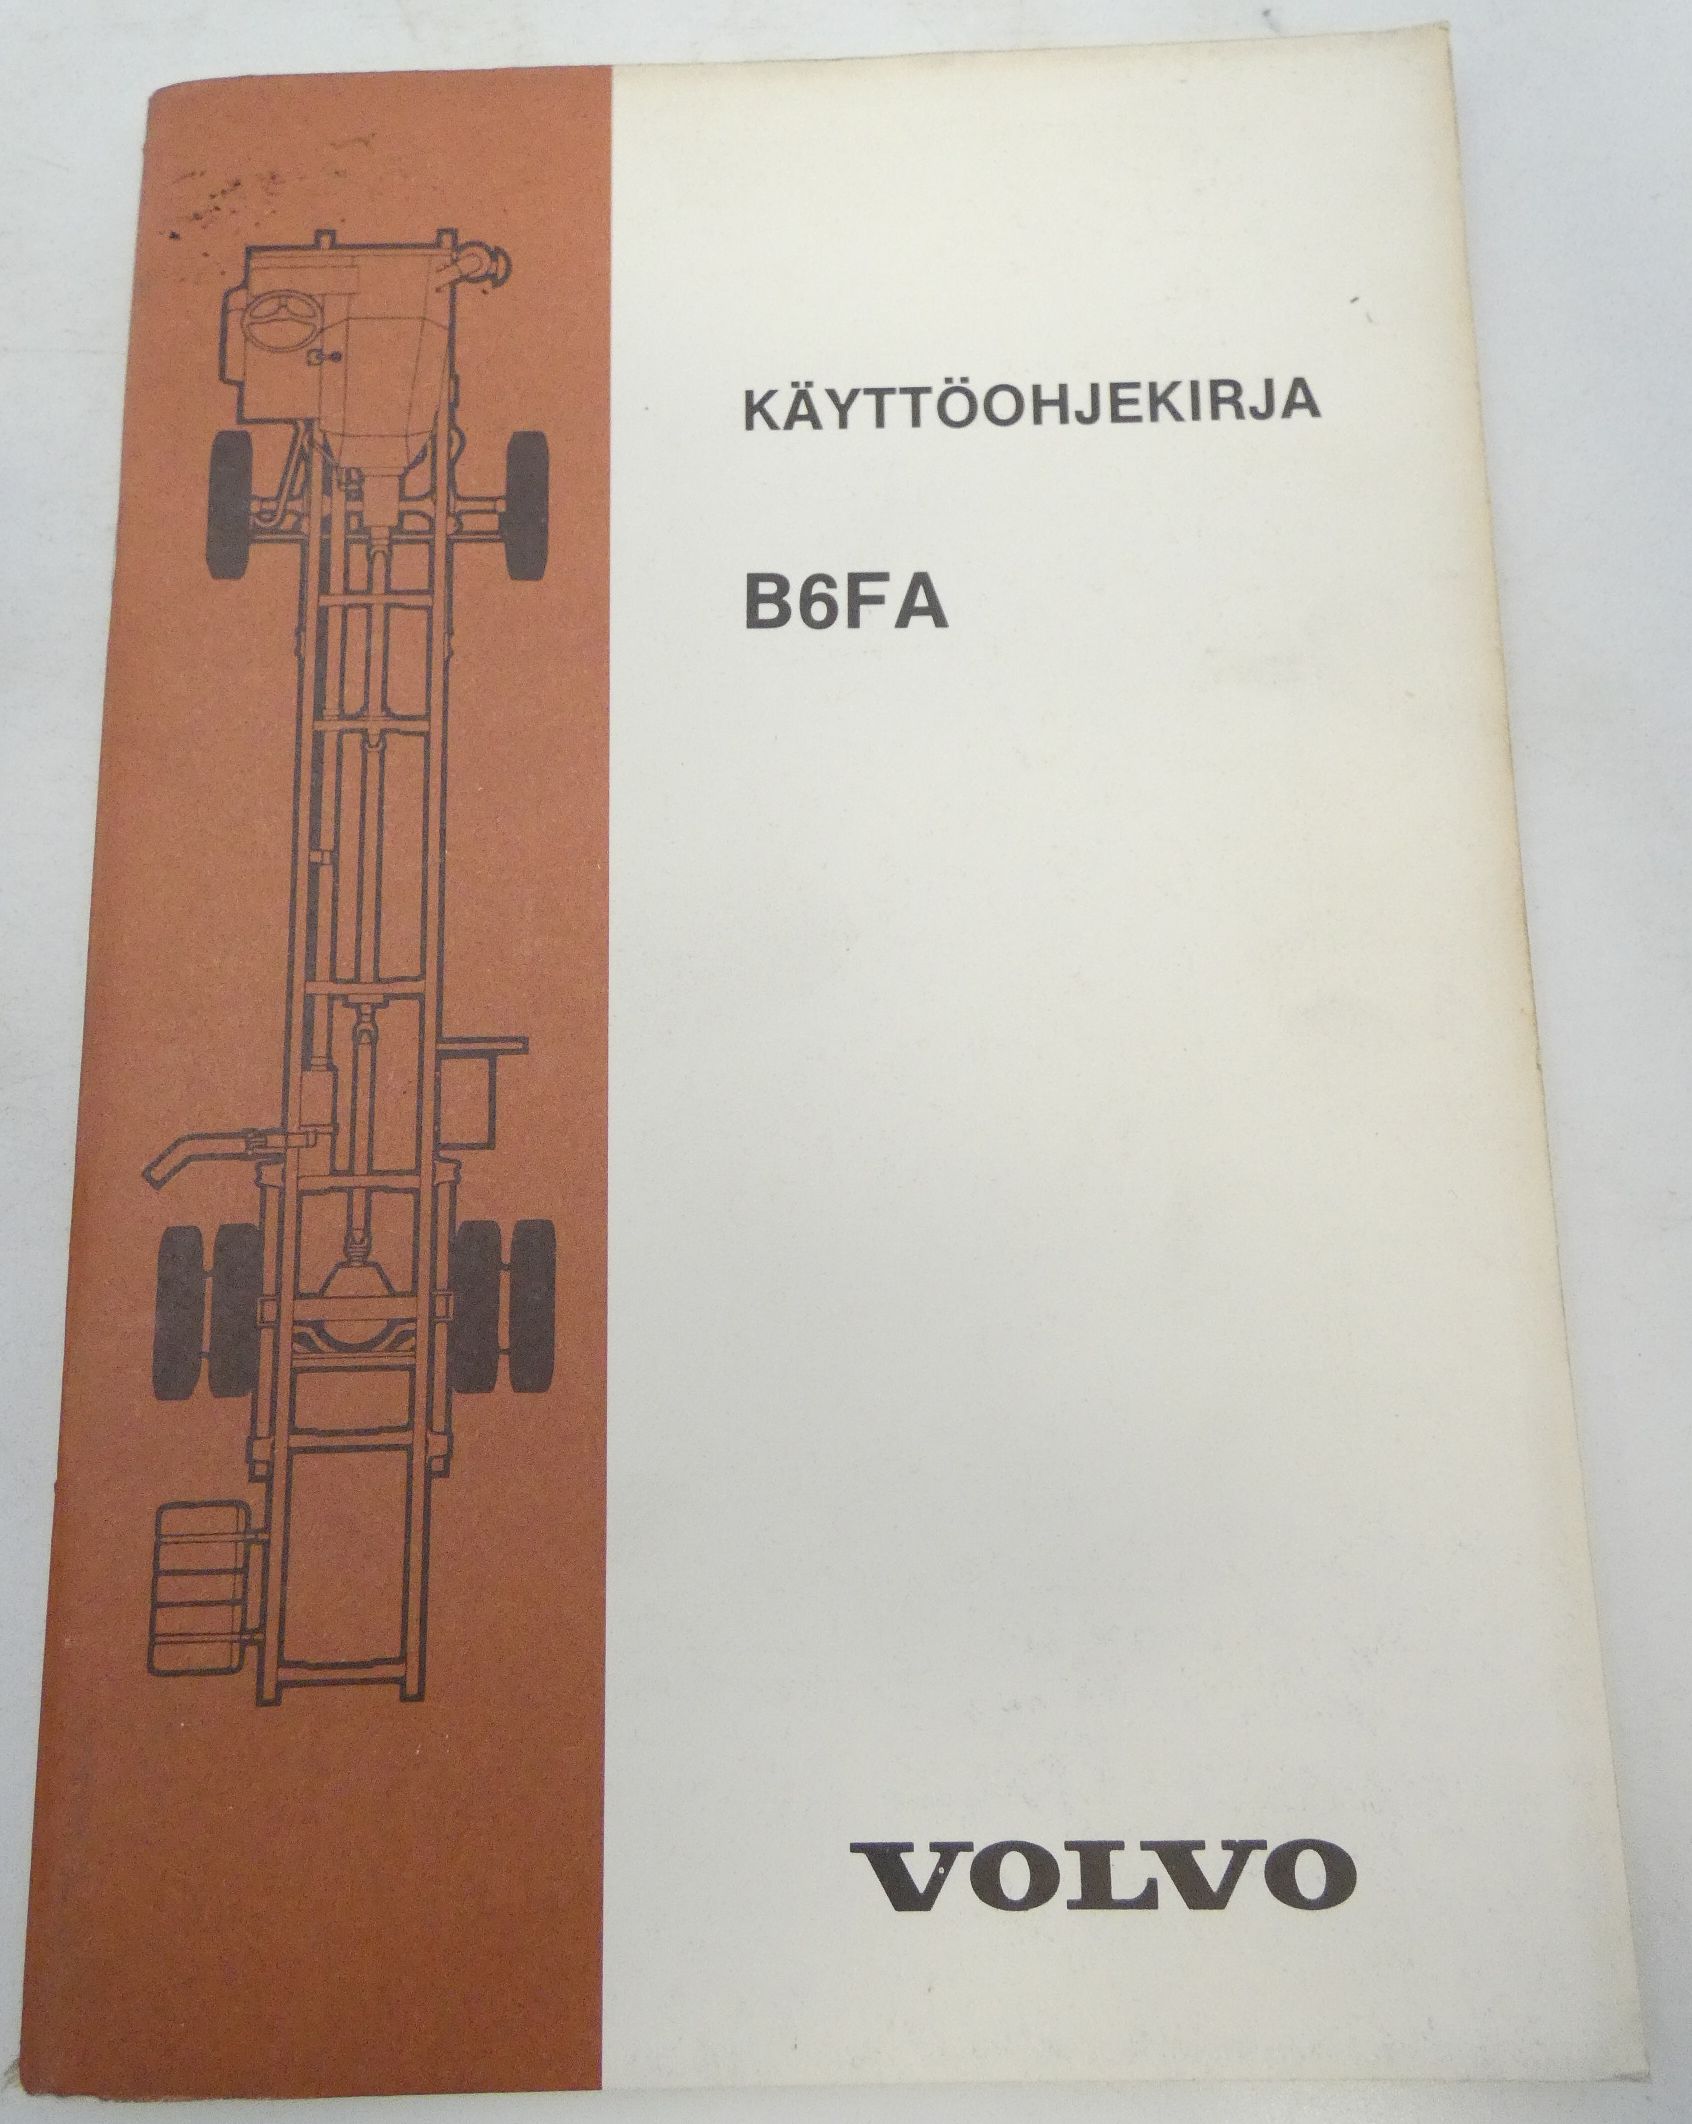 Volvo B6FA käyttöohjekirja